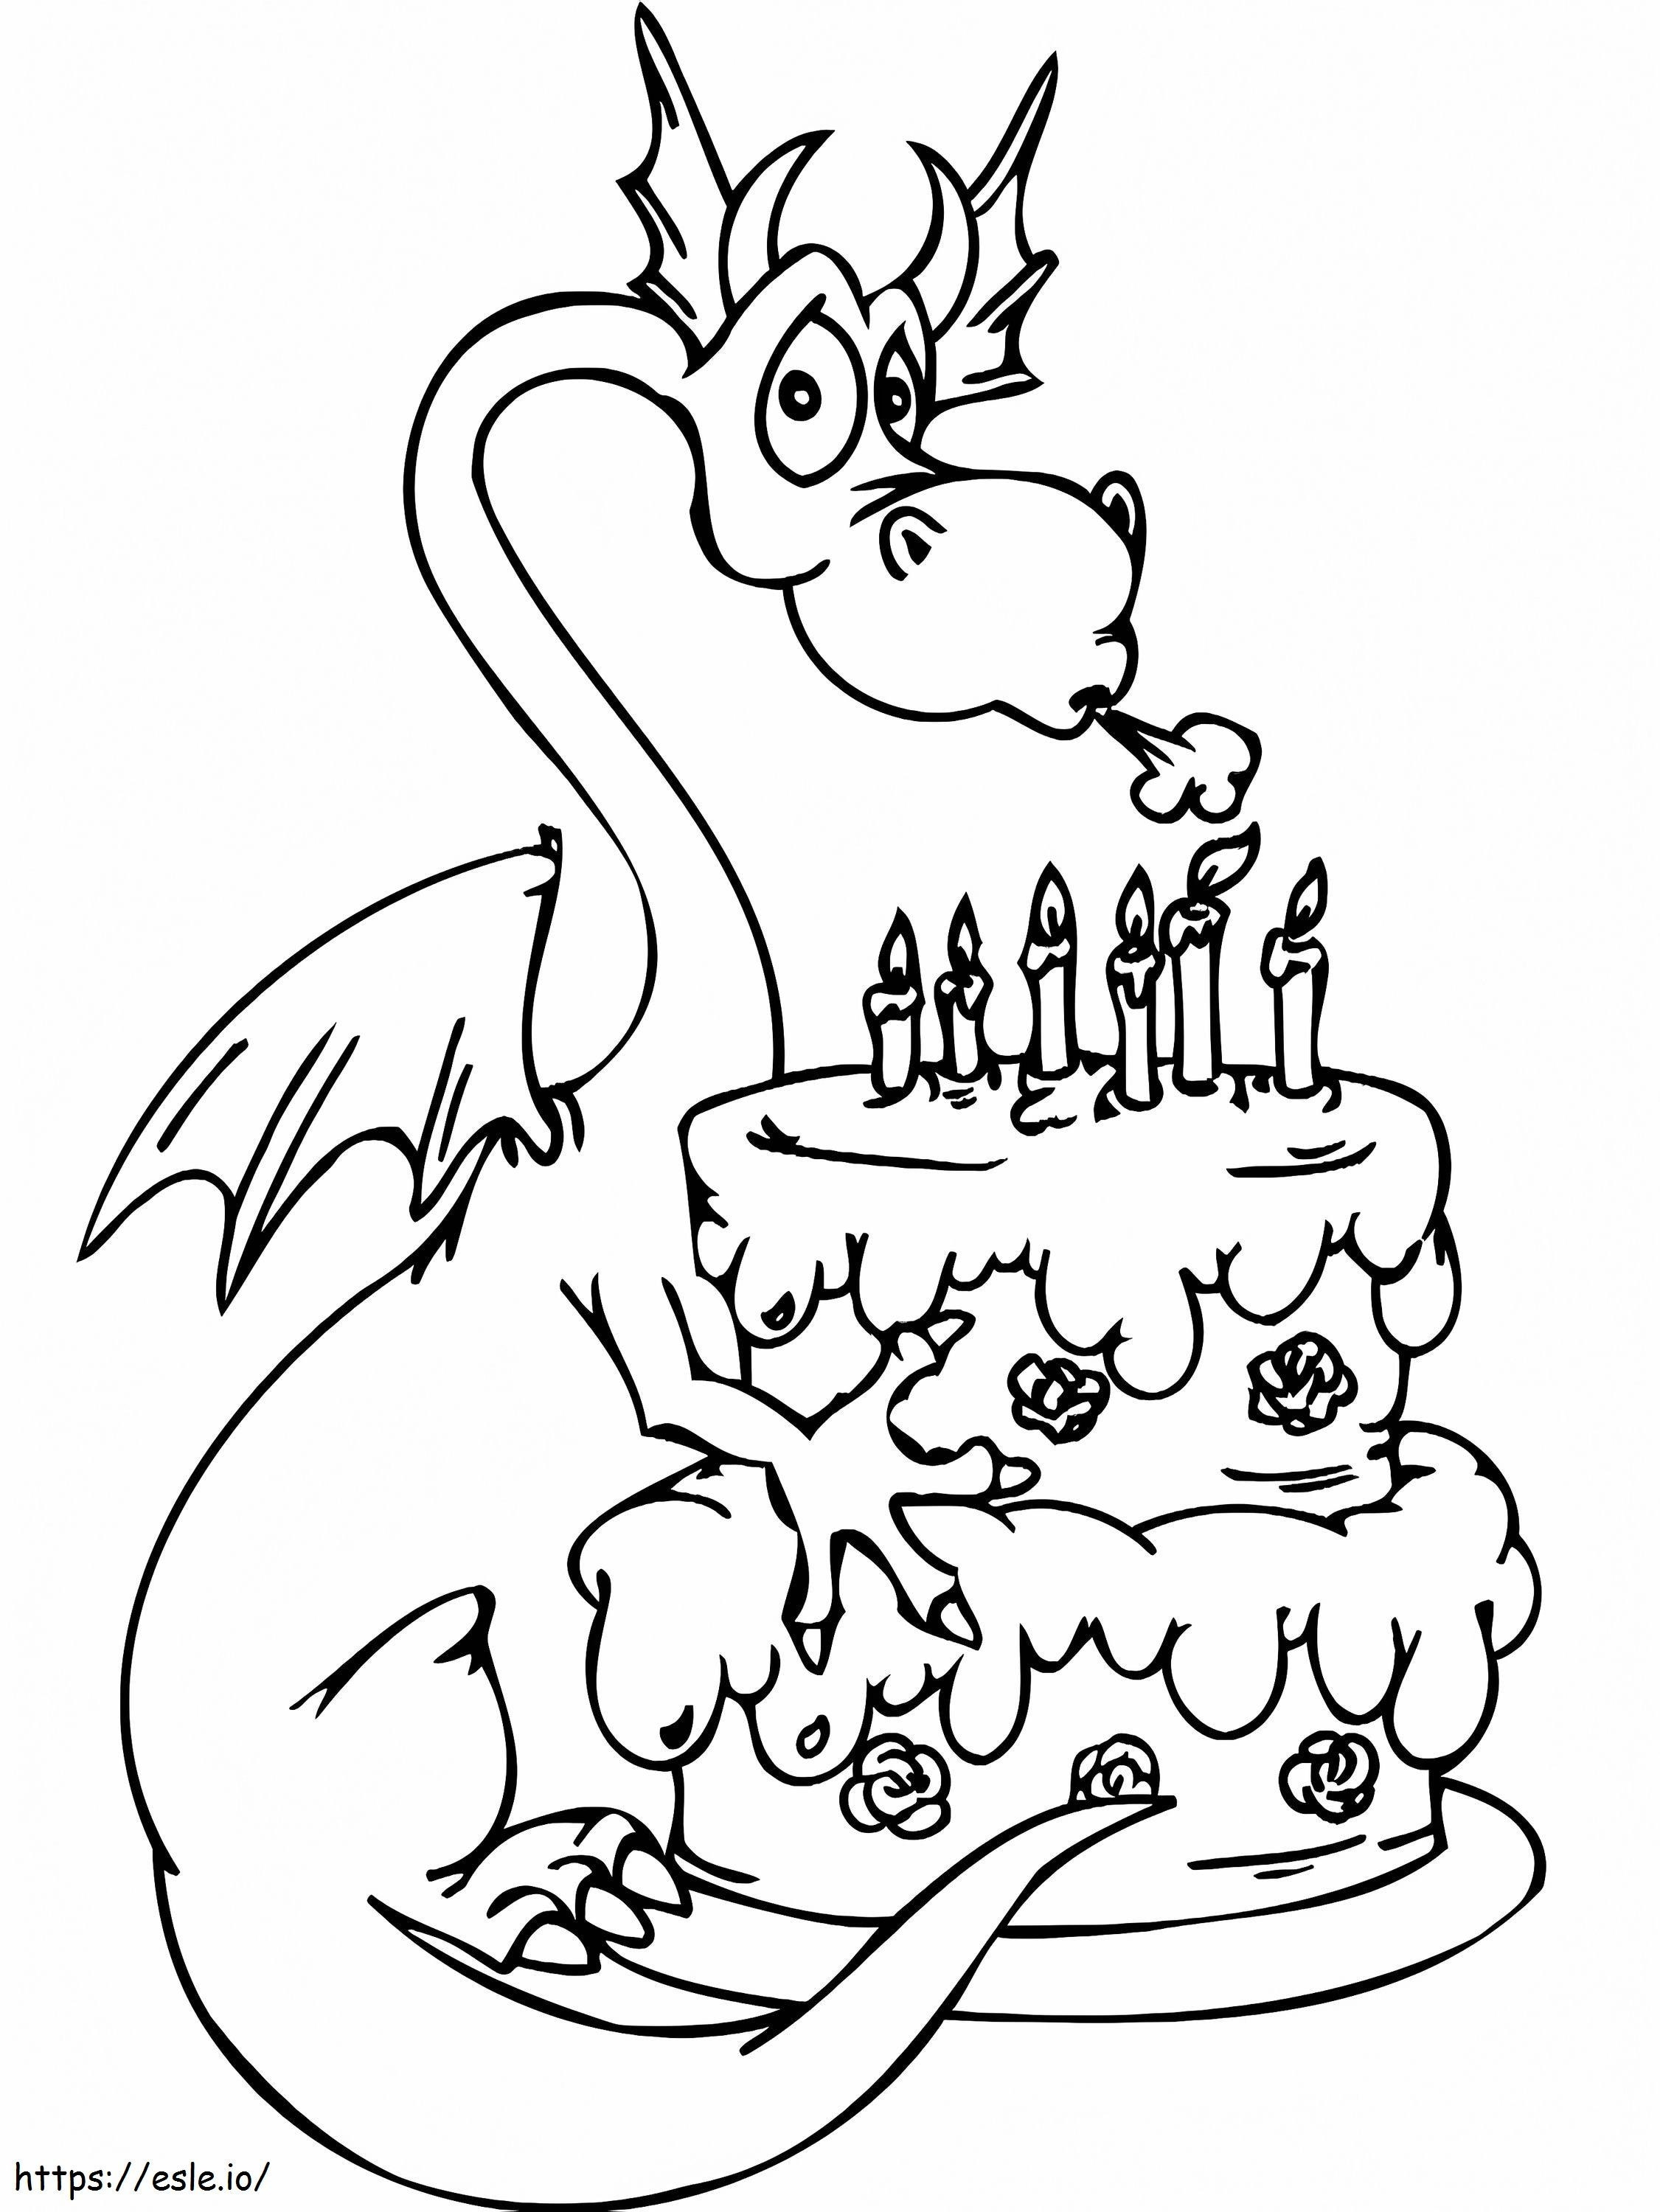  Urodziny Kolorowanki C0Lorcom Tort Wszystkiego Najlepszego Z Okazji Urodzin kolorowanka